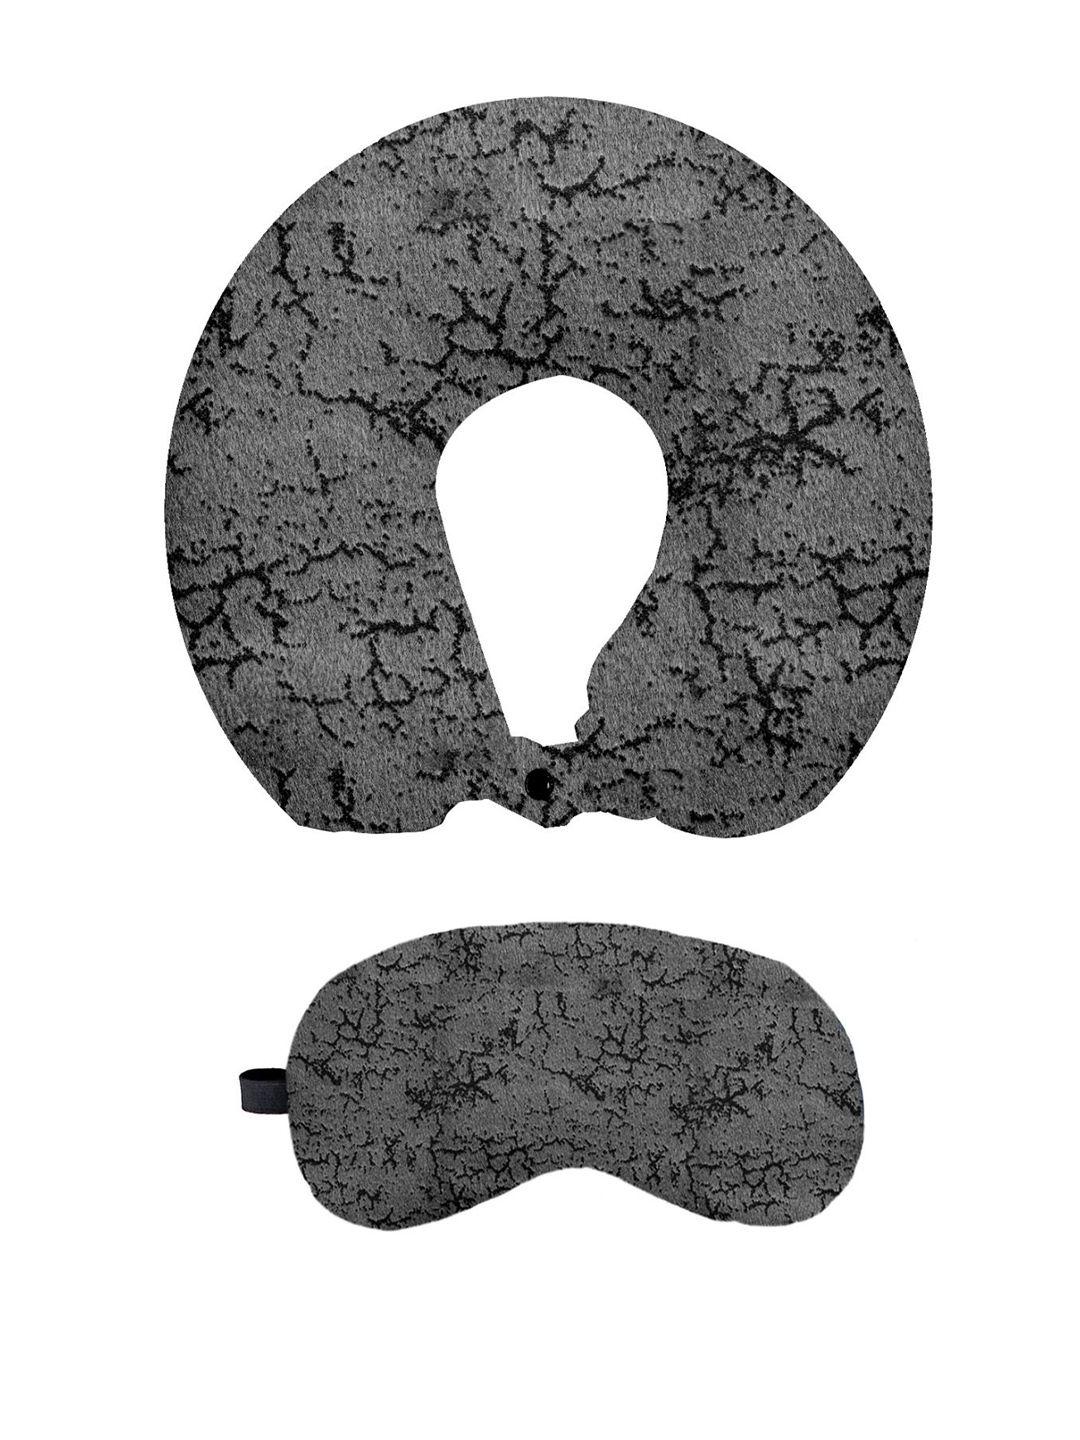 lushomes self-designed velvet neck pillow & eye mask